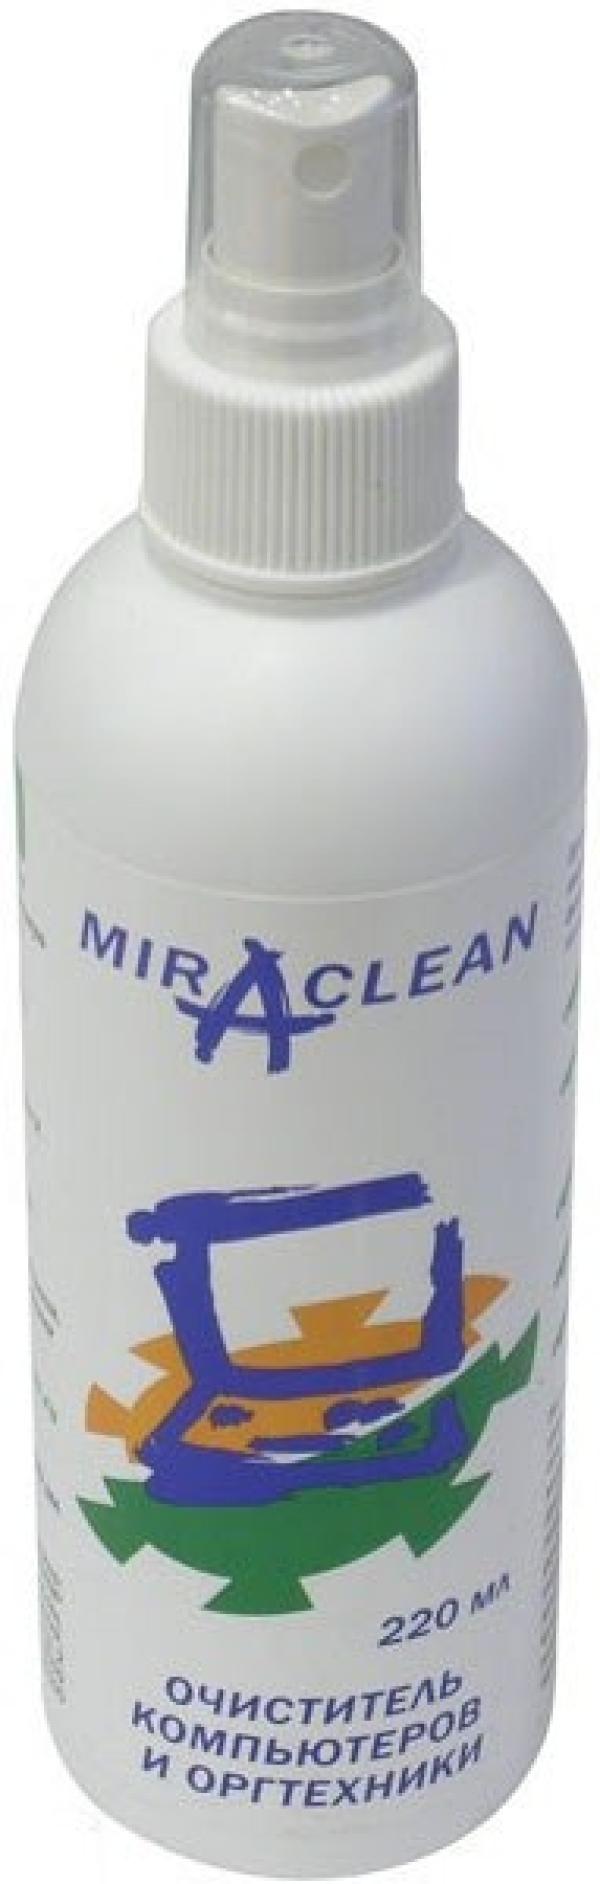 Средство для очистки офисного оборудования MiraClean 24100, спрей, 220мл, с антистатическим эффектом